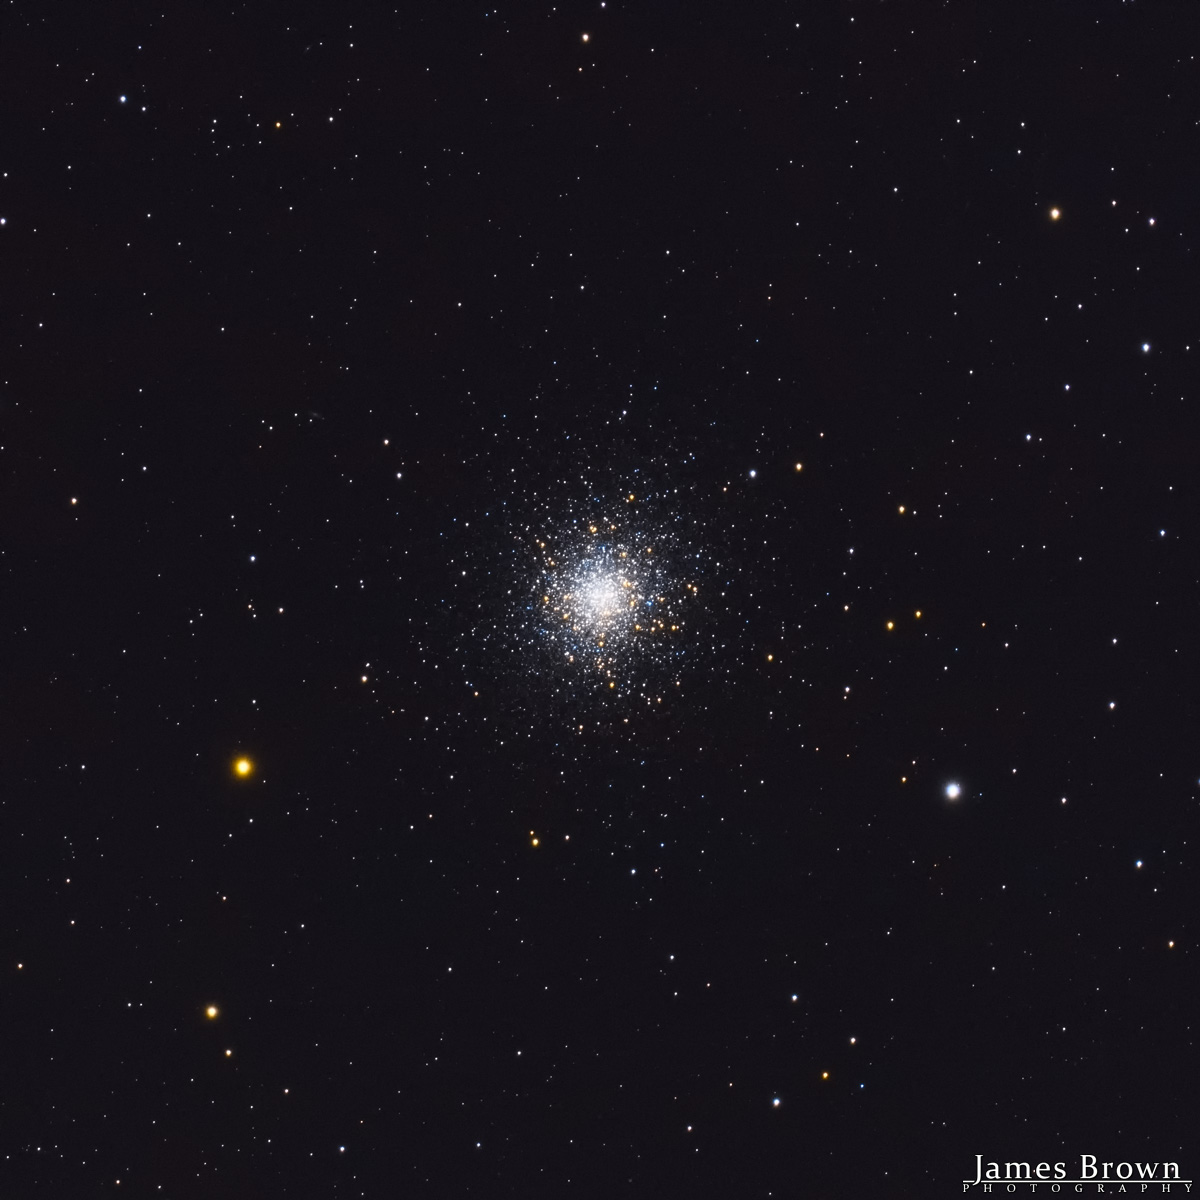 The Great Globular Cluster in Hercules (M13): James Brown